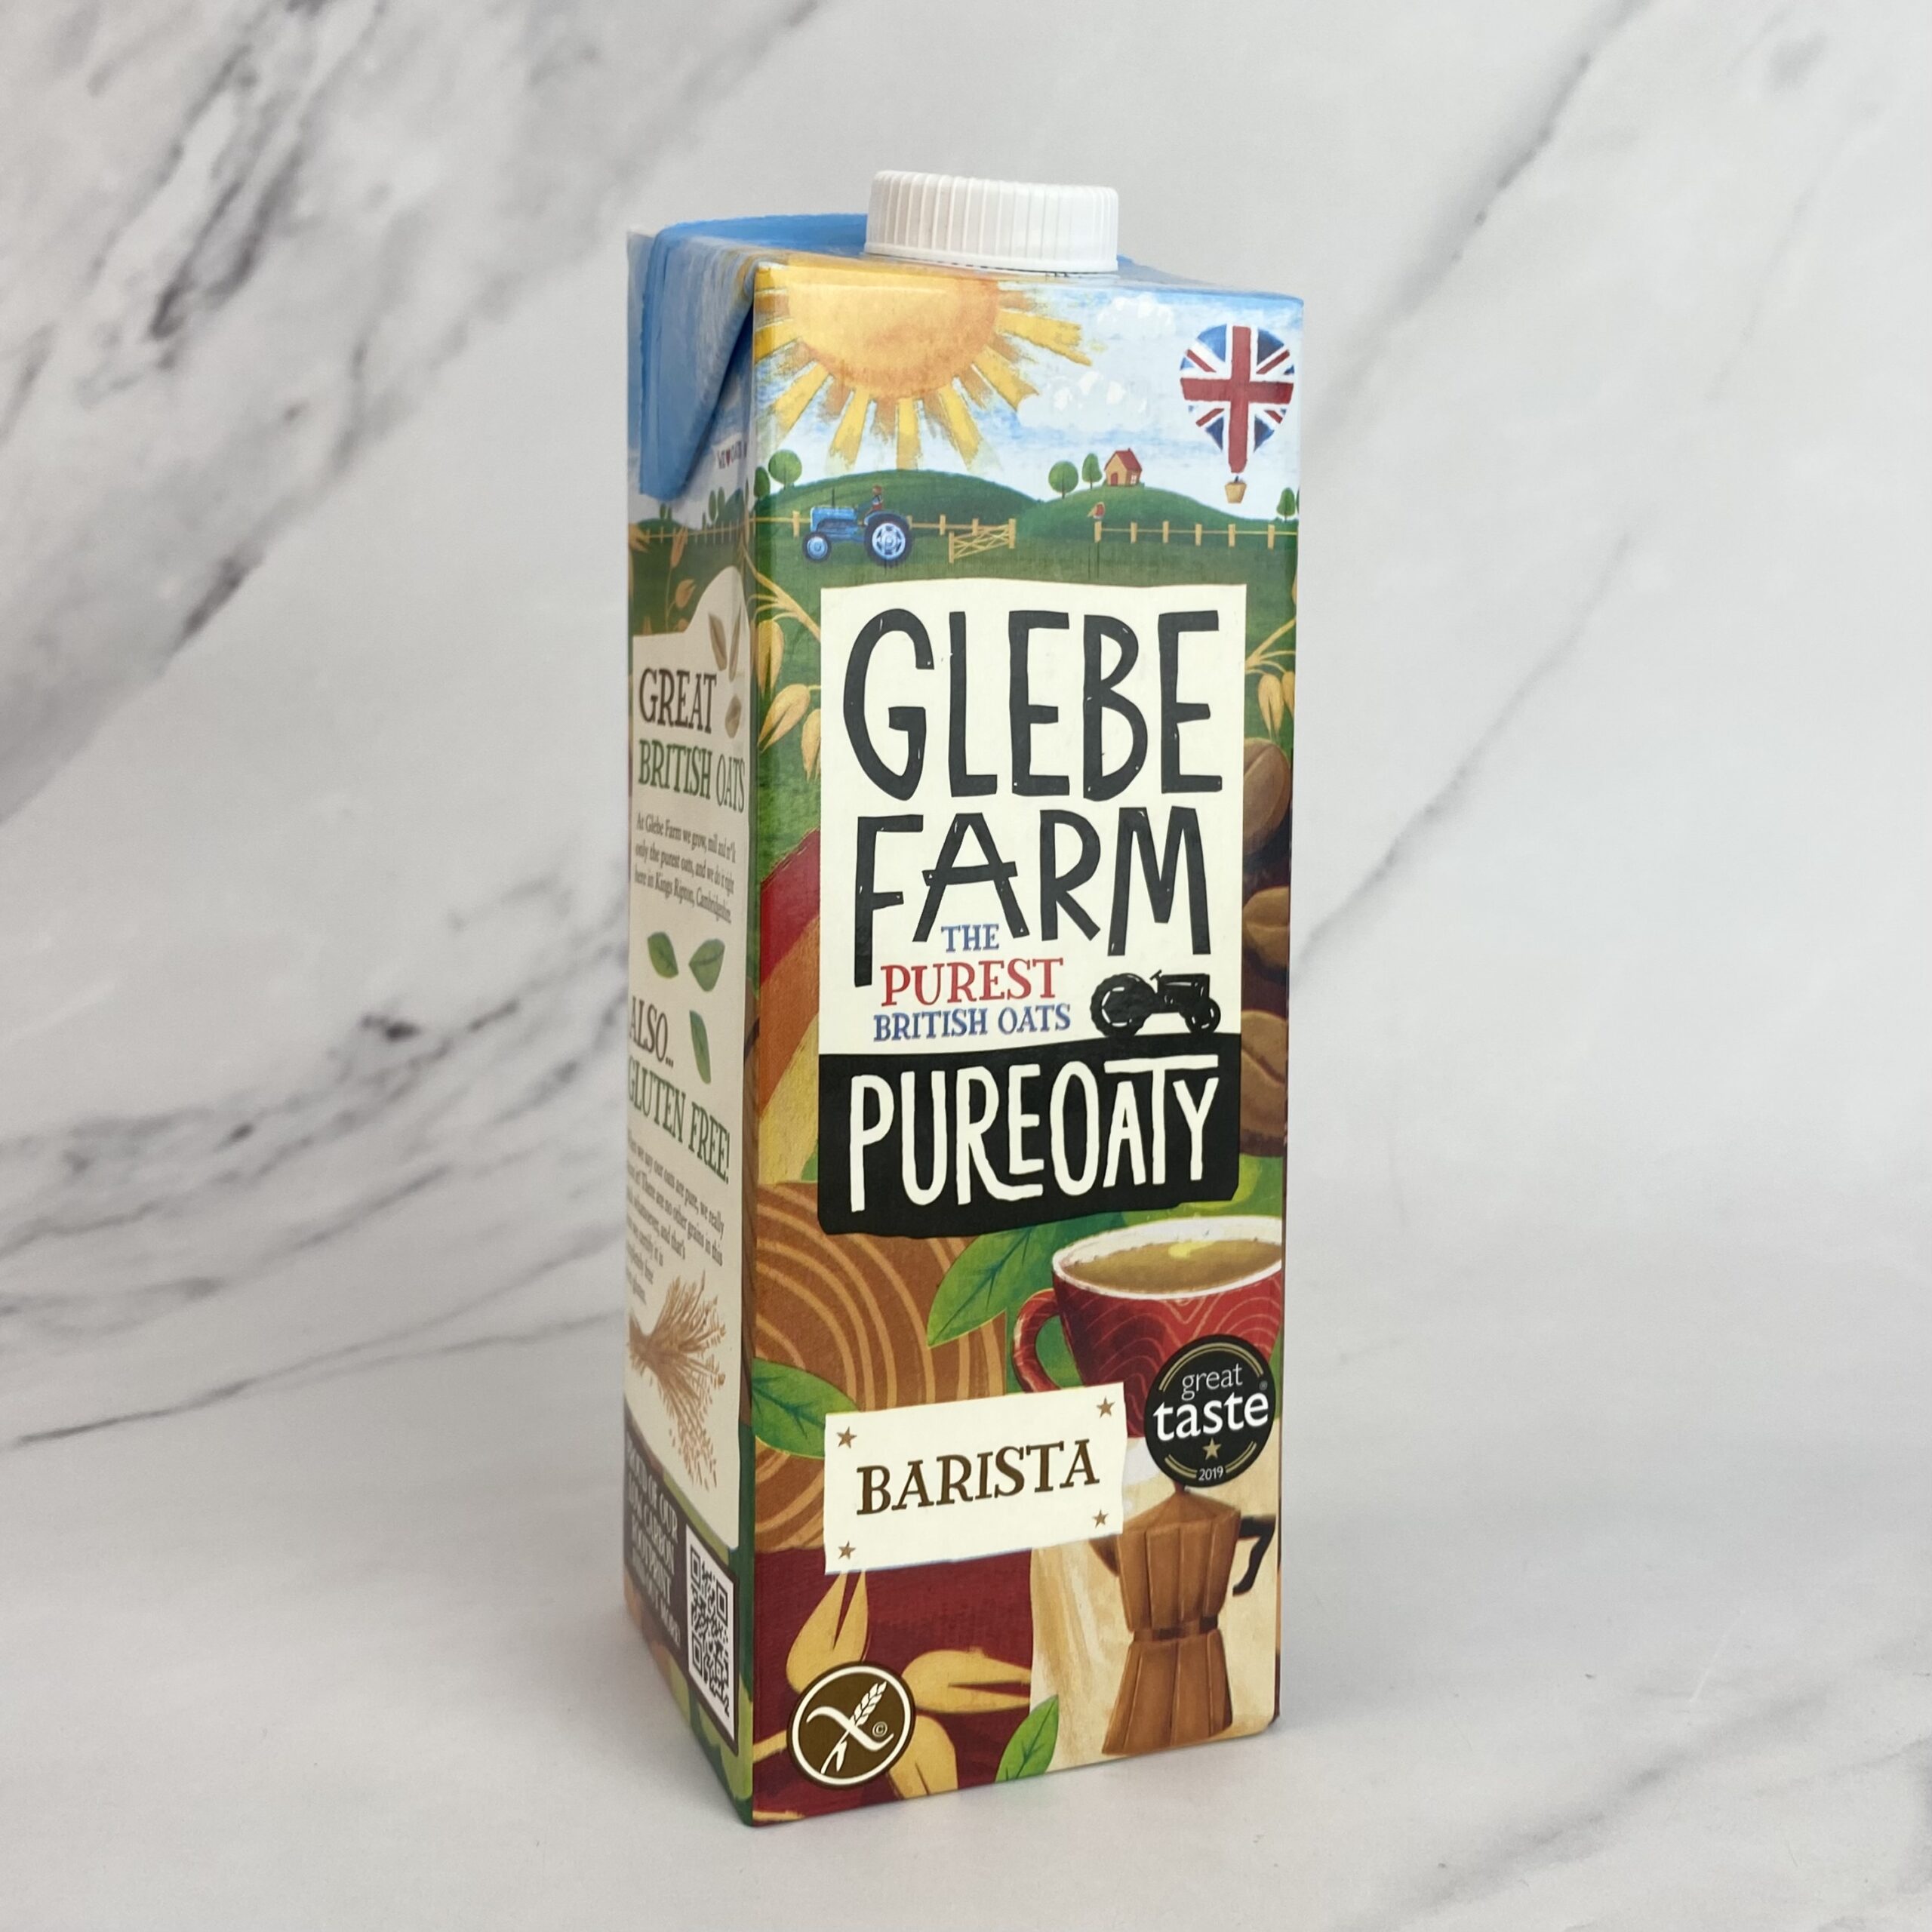 Glebe Farm PureOaty Oat Drink – 6 x 1ltr